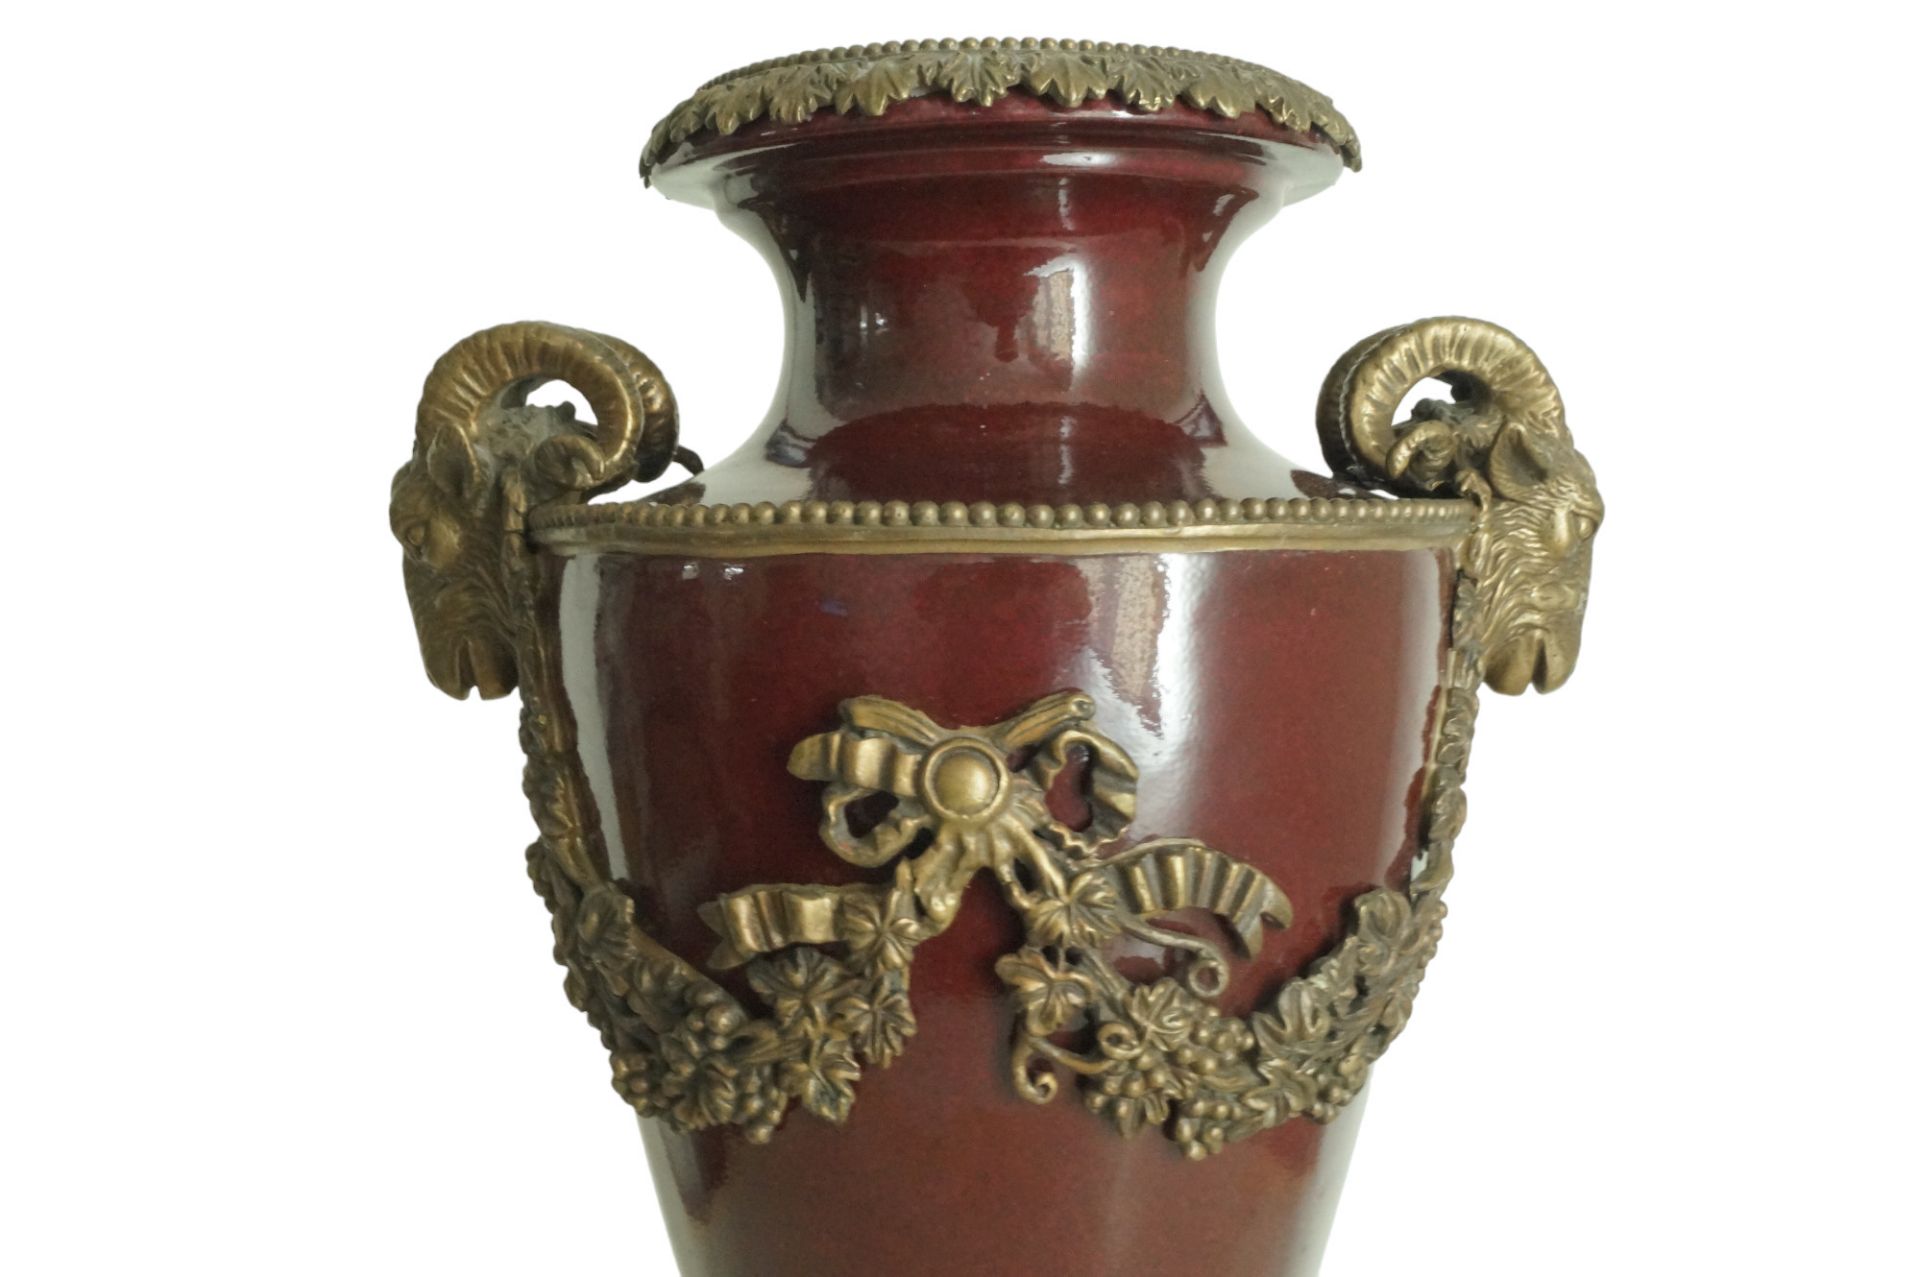 Große Porzellan Amphoren-Vase des Herstellers "Wong Lee" auf prunkvollem Postament; Korpus in weinr - Bild 5 aus 7